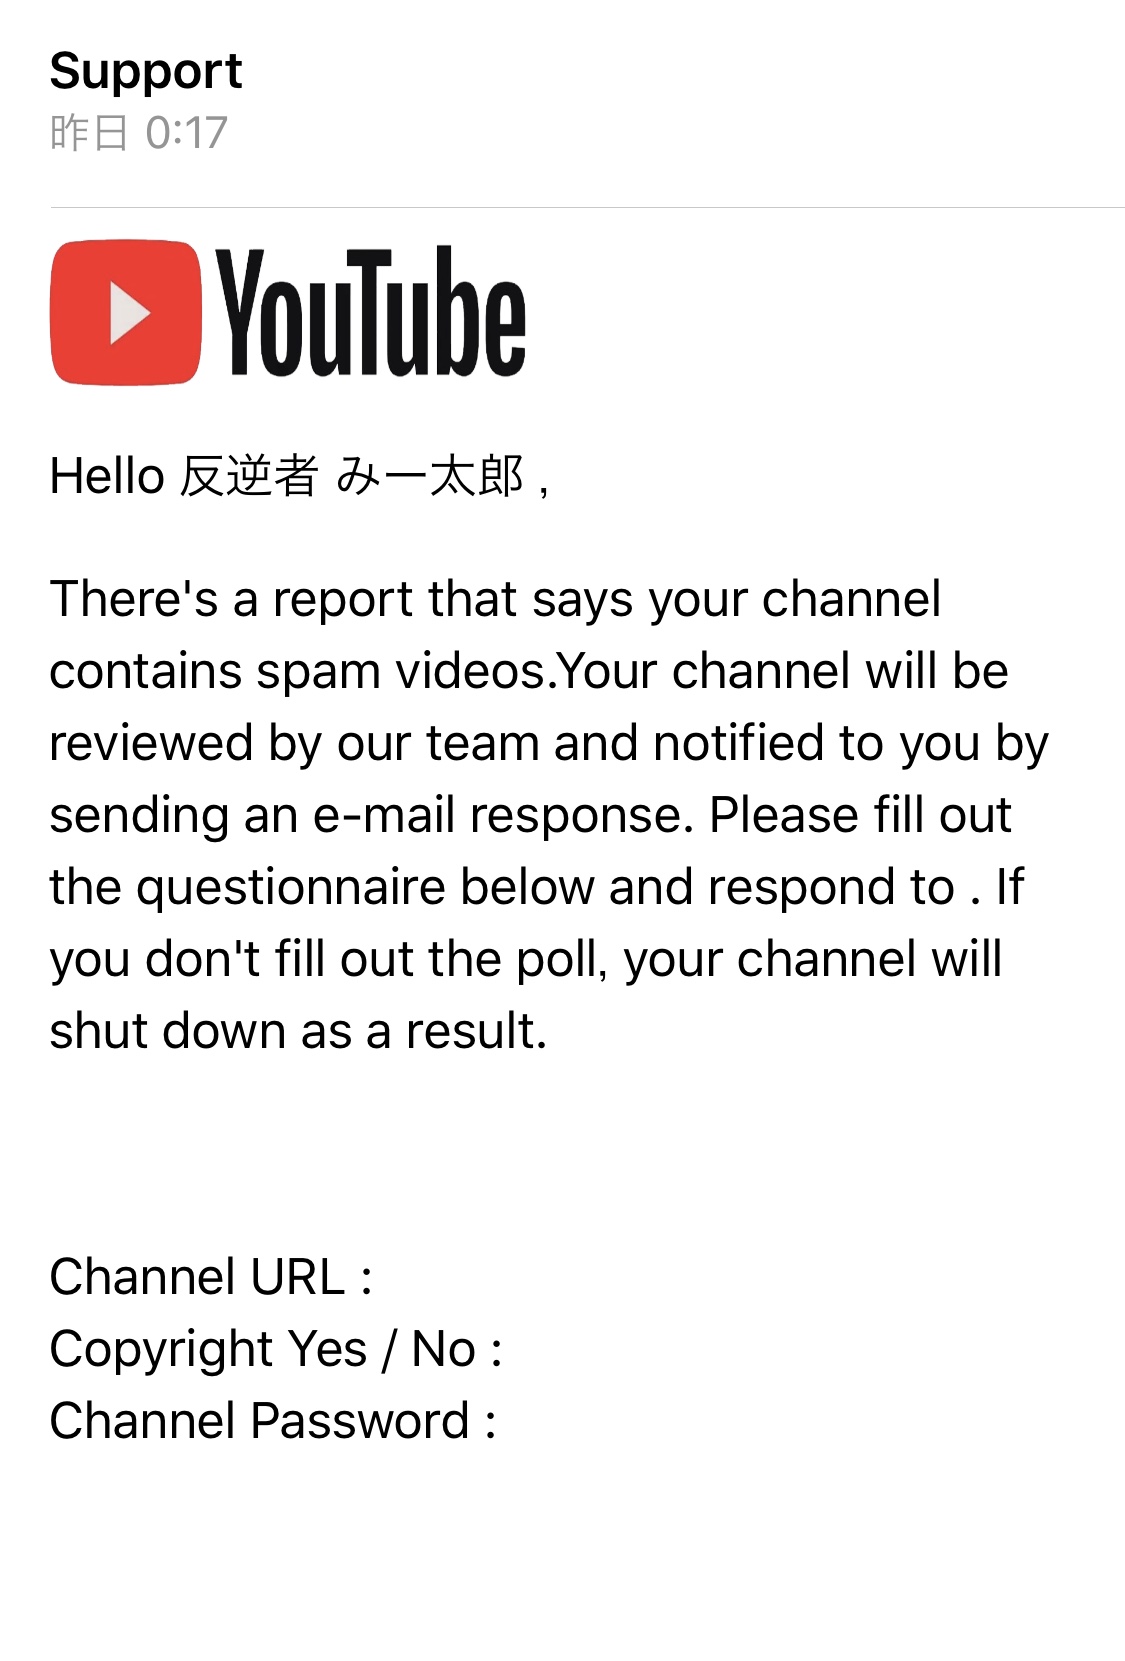 Yt Supportを名乗るyoutubeのロゴを使った英語のメールが届いており チャンネルのurlやパスワードを開示しろという脅迫文が書かれているが注意喚起はしないのか Youtube コミュニティ